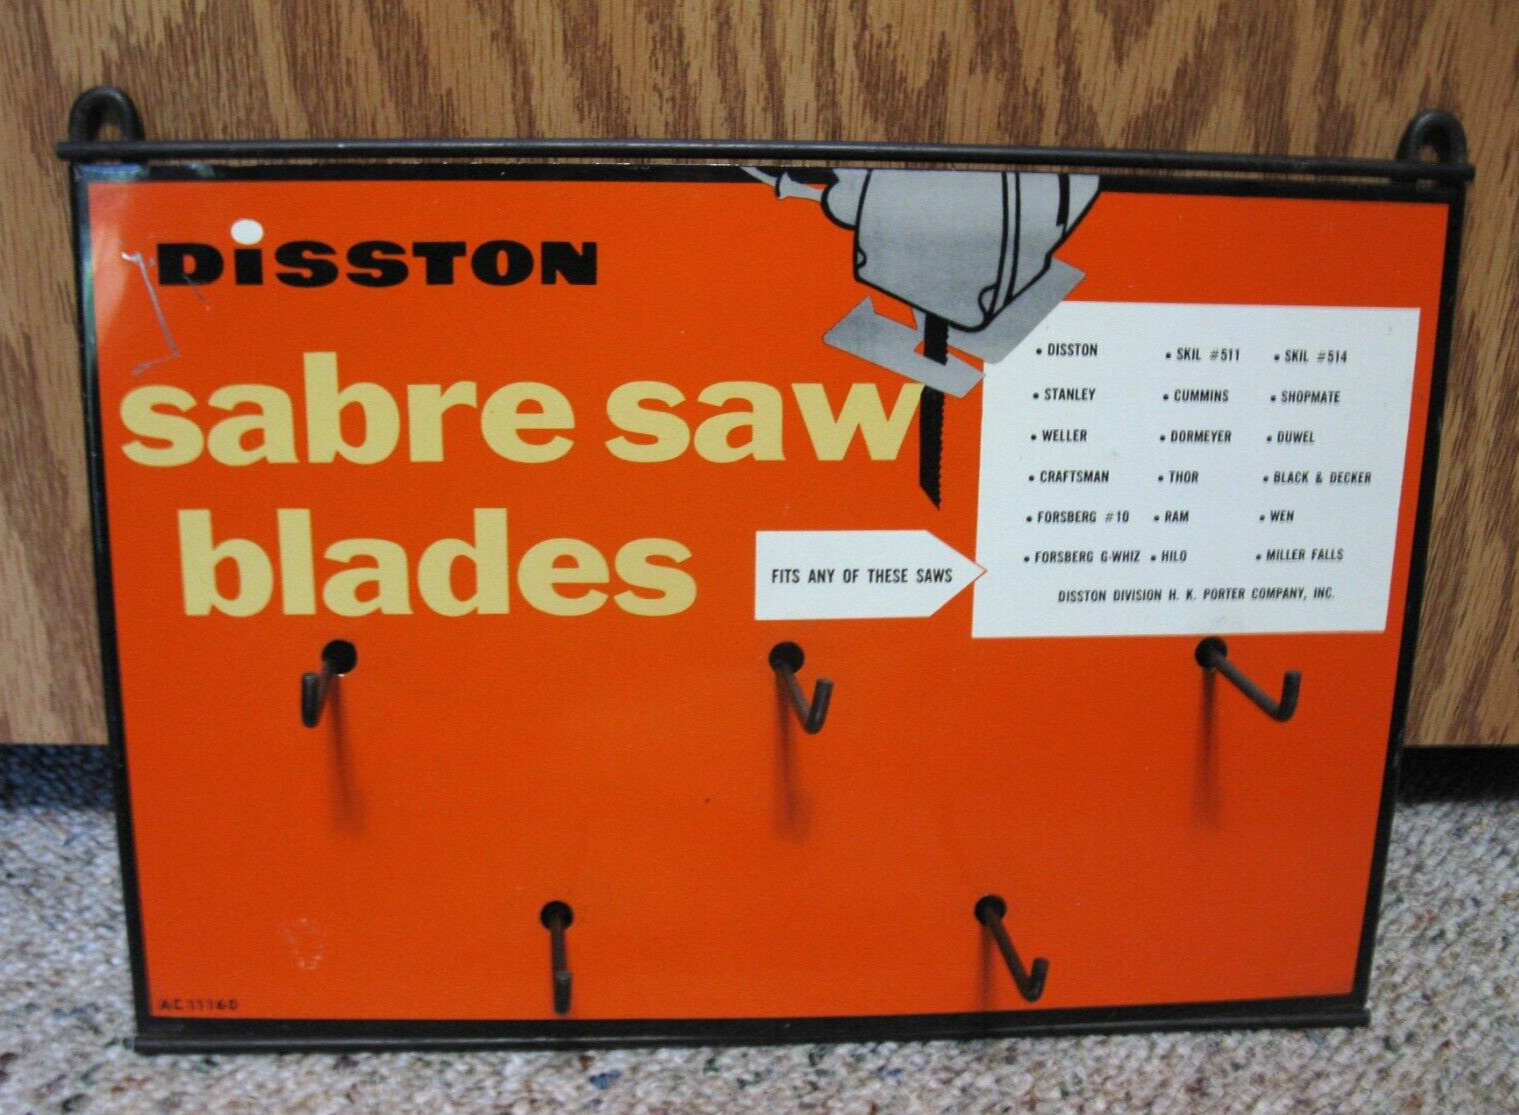 DISSTON Hardware Tool Store Shop Sabre Saw Blade Display Sign VINTAGE Metal